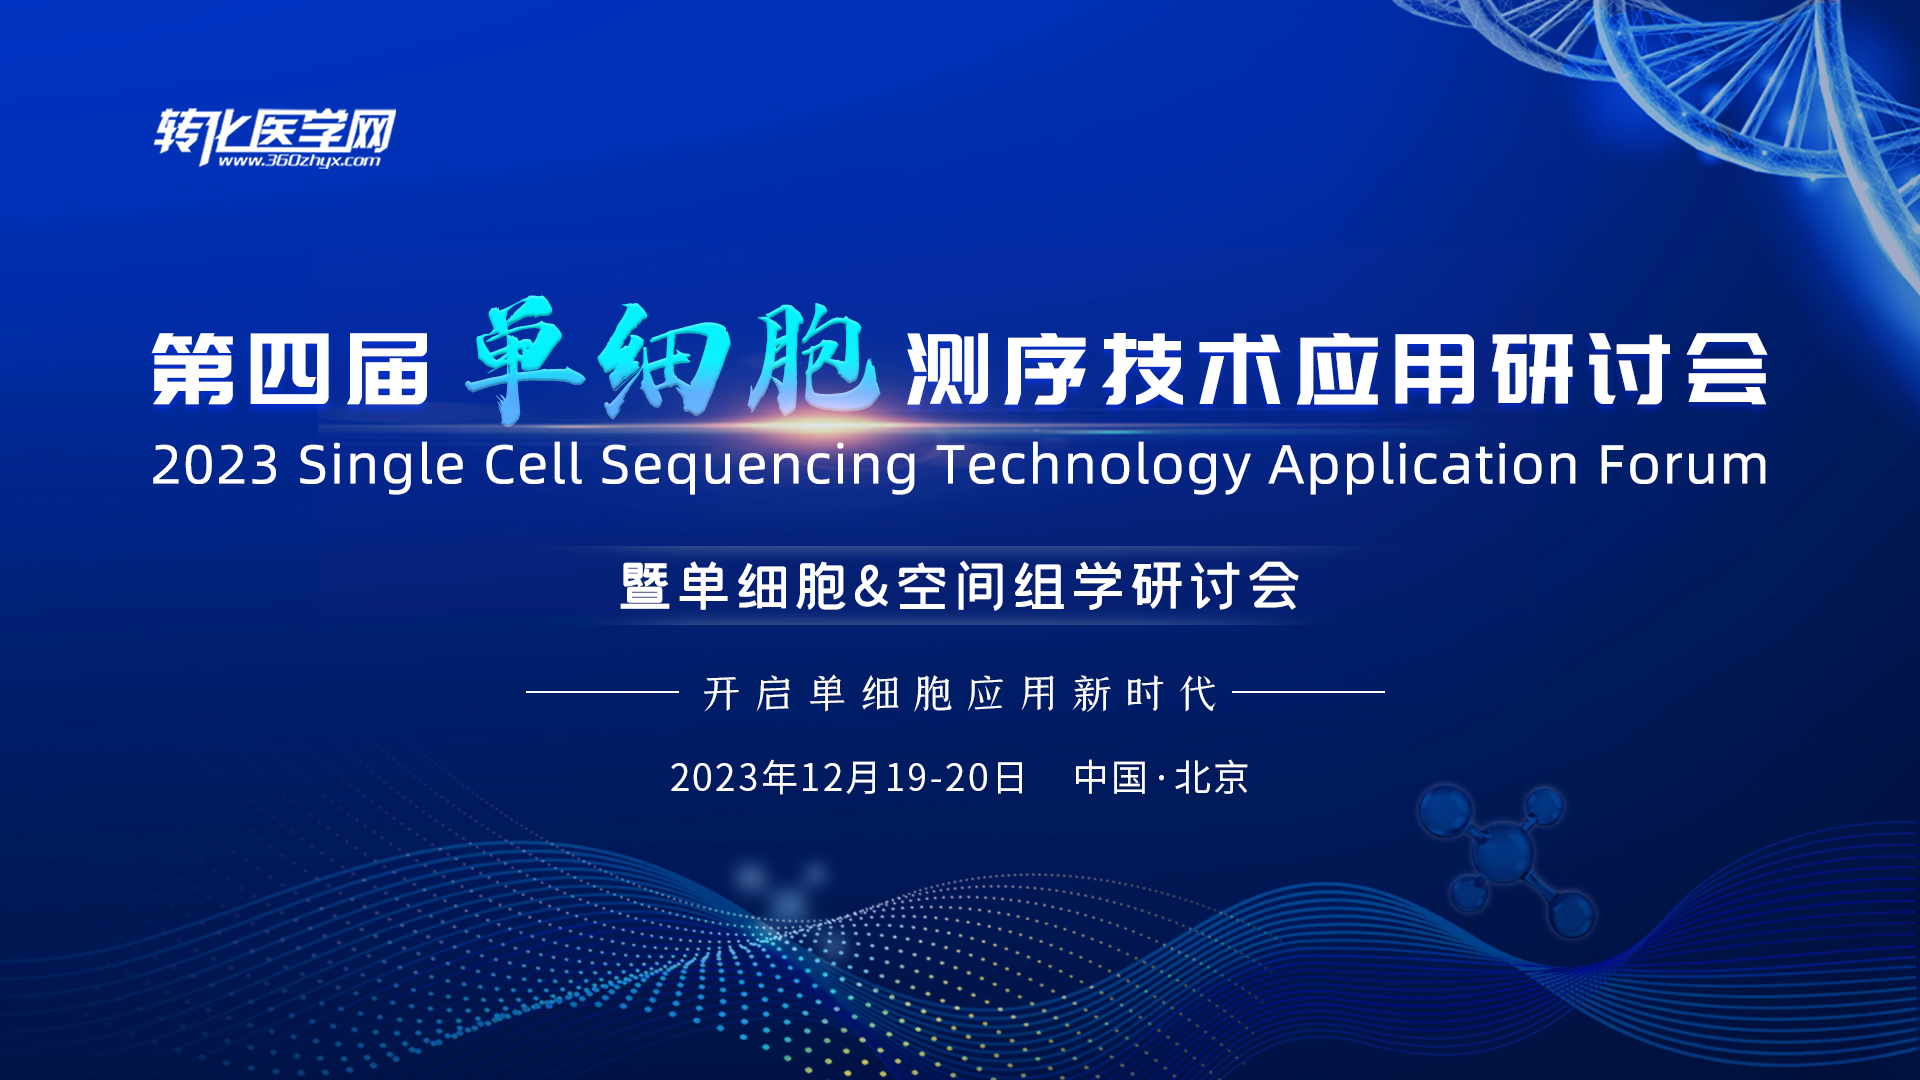 新格元生物邀请您参加2023“第四届单细胞测序技术应用研讨会暨单细胞&空间组学研讨会”